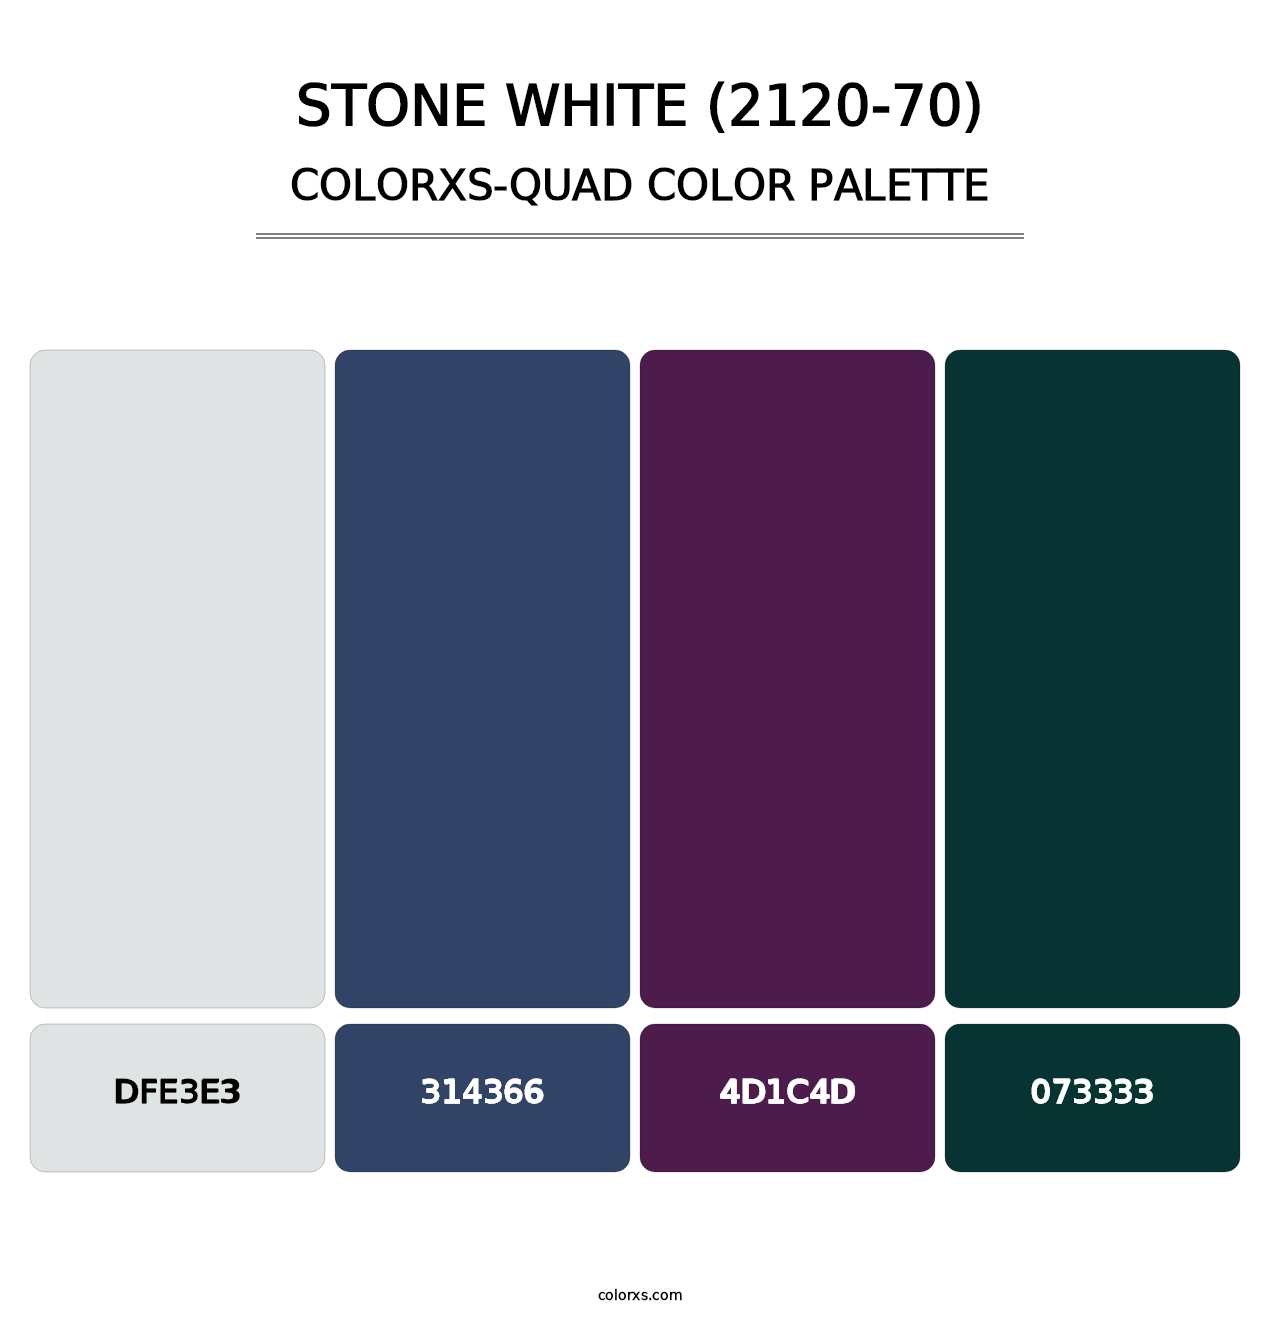 Stone White (2120-70) - Colorxs Quad Palette